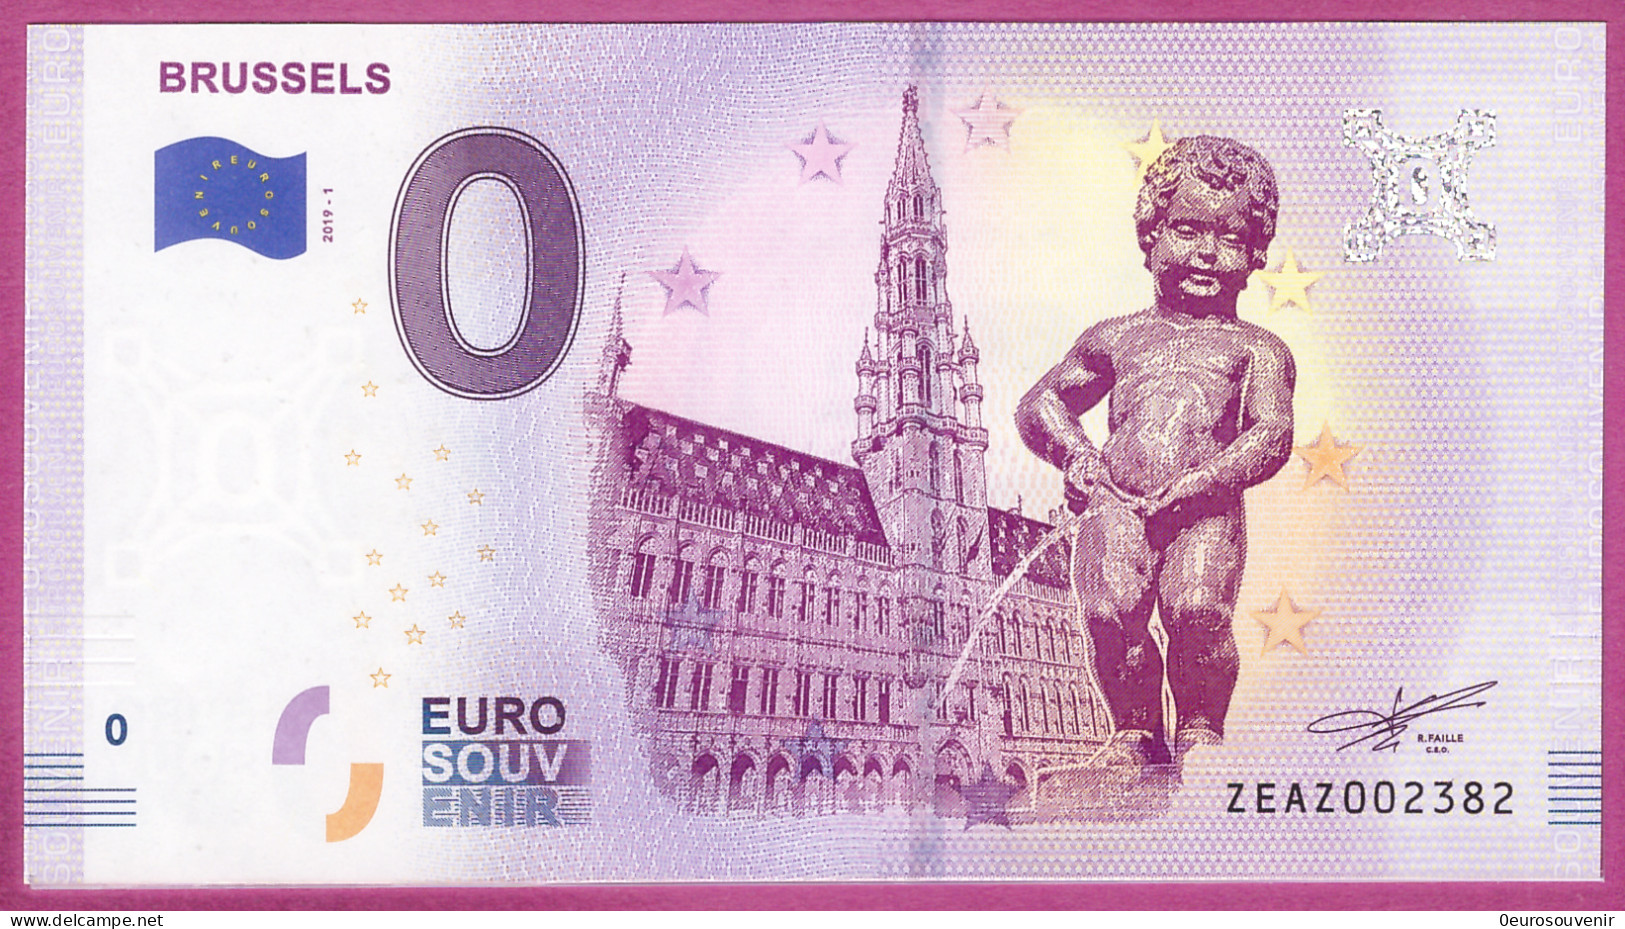 0-Euro ZEAZ 2019-1  BRUSSELS - MANNEKEN PIS - Privatentwürfe